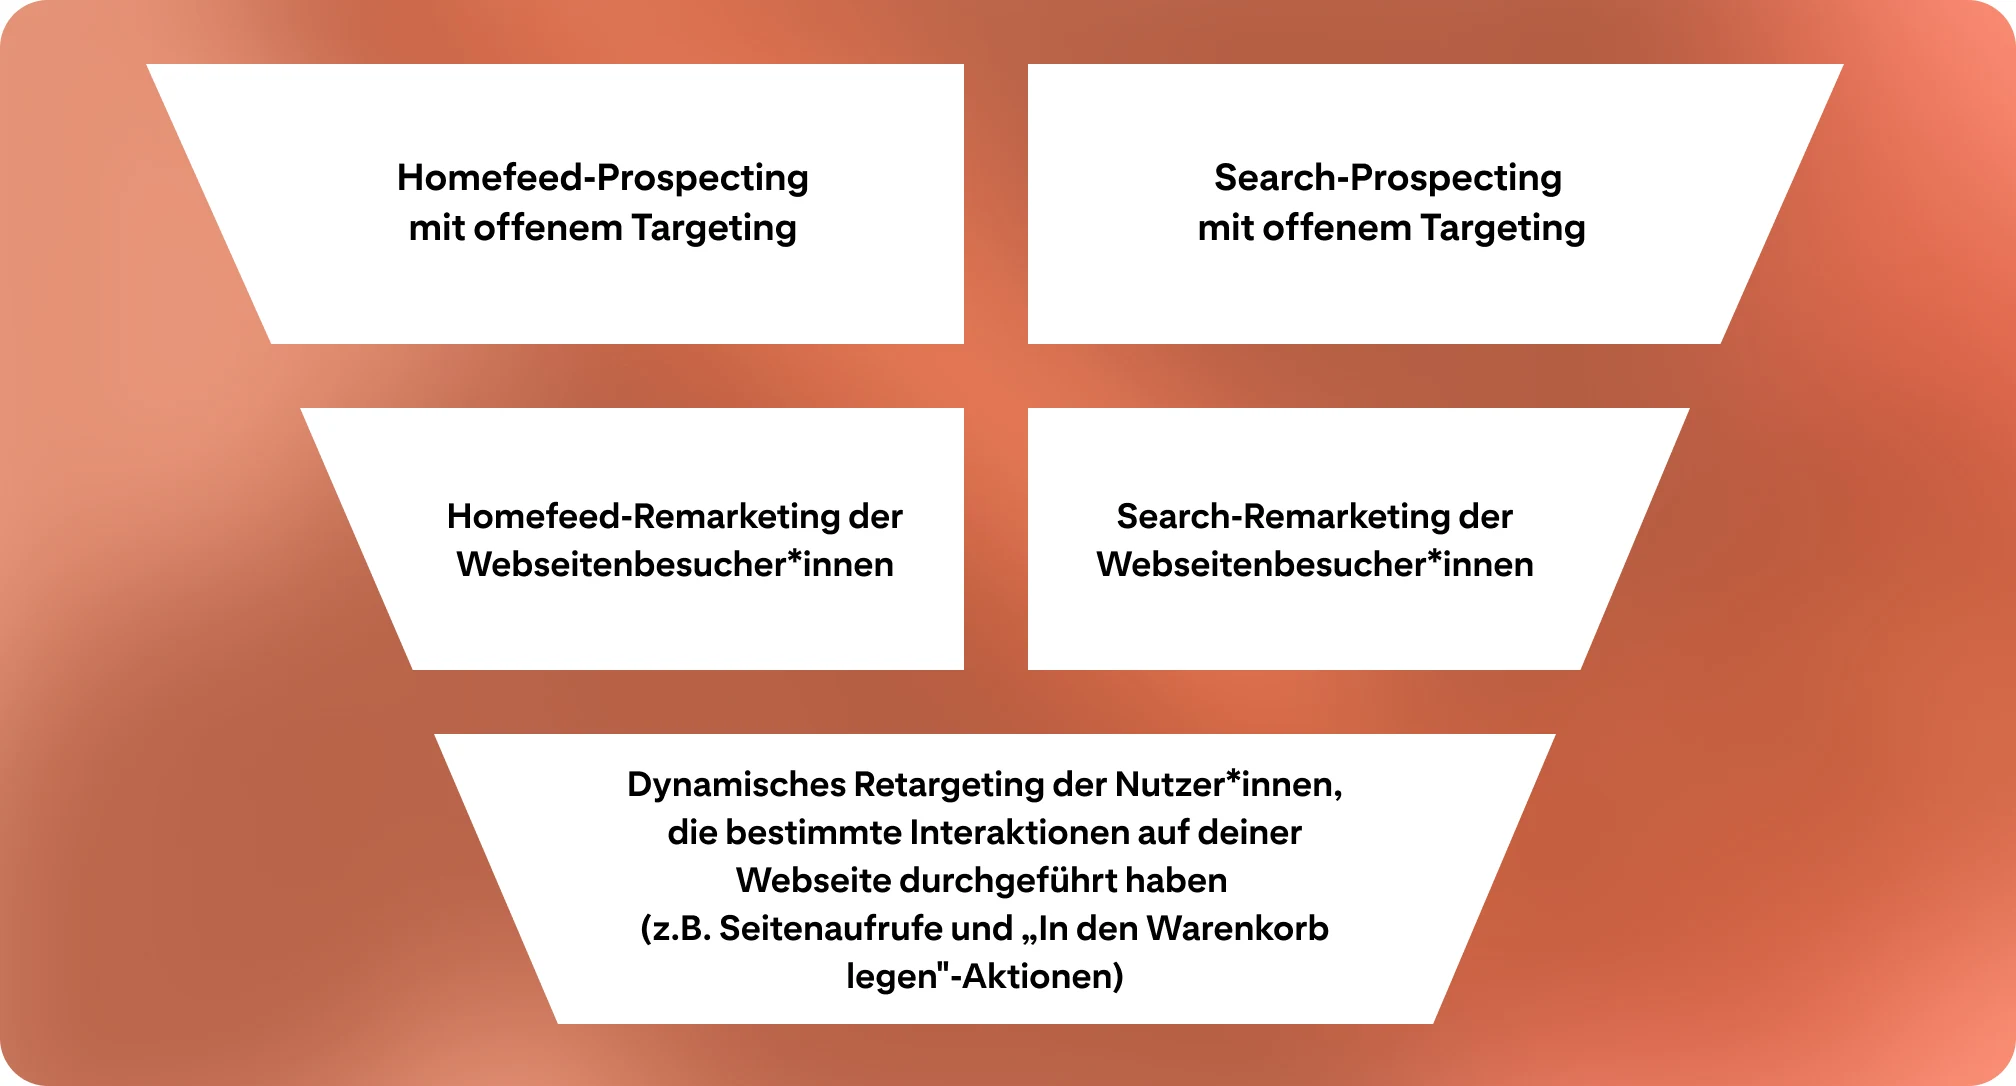 Ein Marketing Funnel auf orangem Hintergrund, unterteilt in fünf Teilelemente. Jedes Element steht für eine bestimmte Werbekampagne.